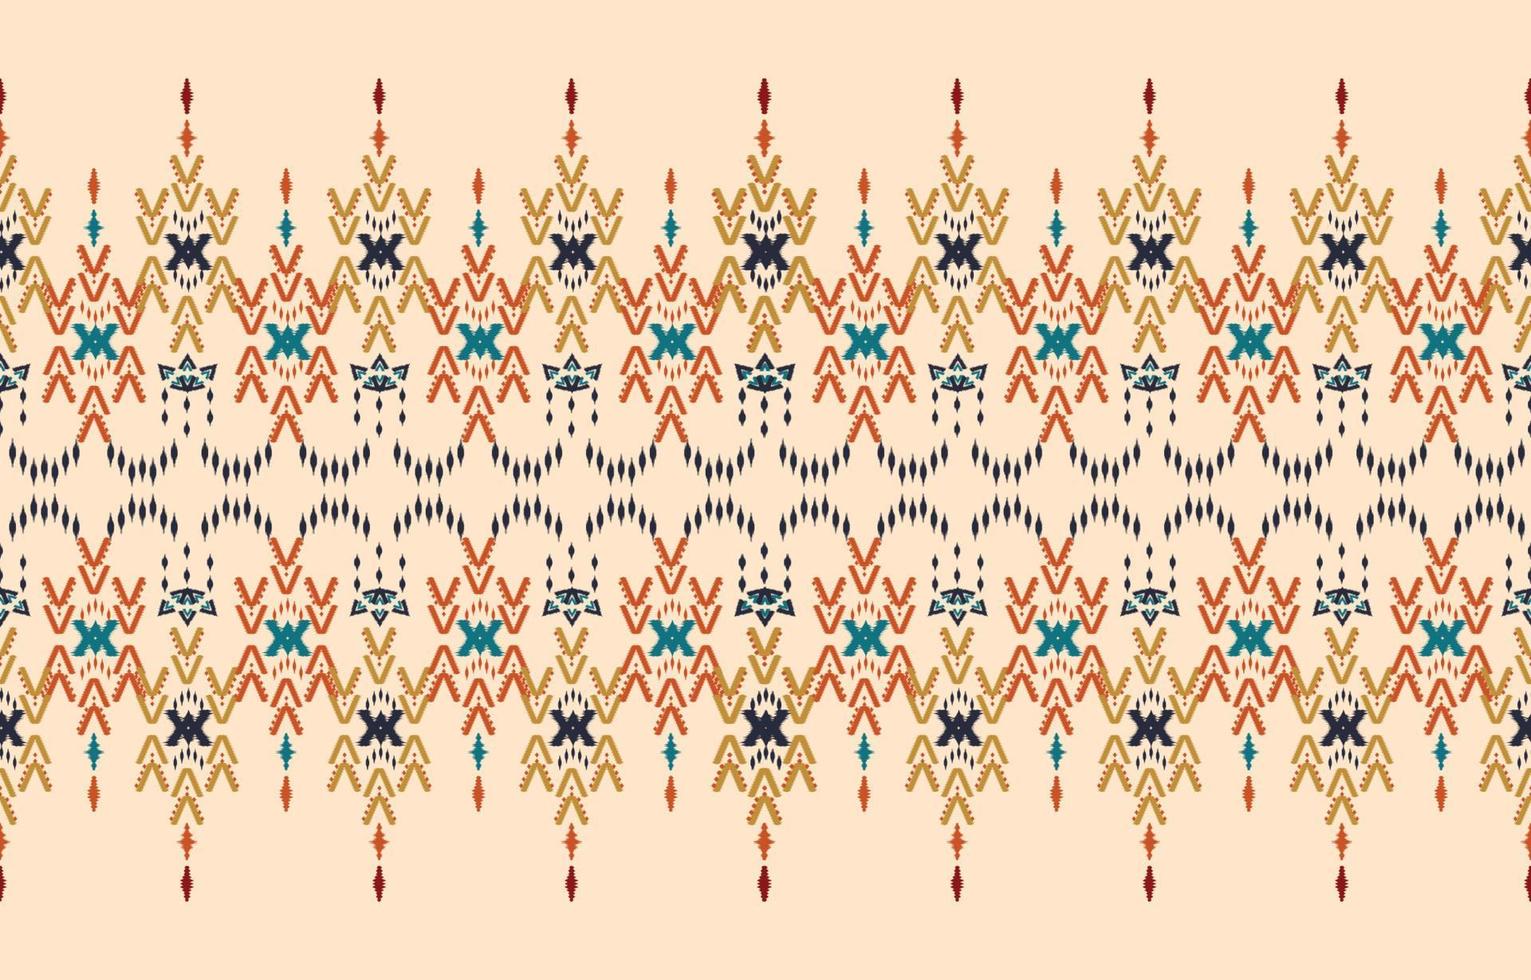 hermoso arte abstracto étnico ikat. chevron de patrones sin fisuras en tribal, rombo de bordado popular y estilo mexicano. estampado de adornos de arte geométrico azteca. diseño para alfombras, papel pintado, envoltura. vector